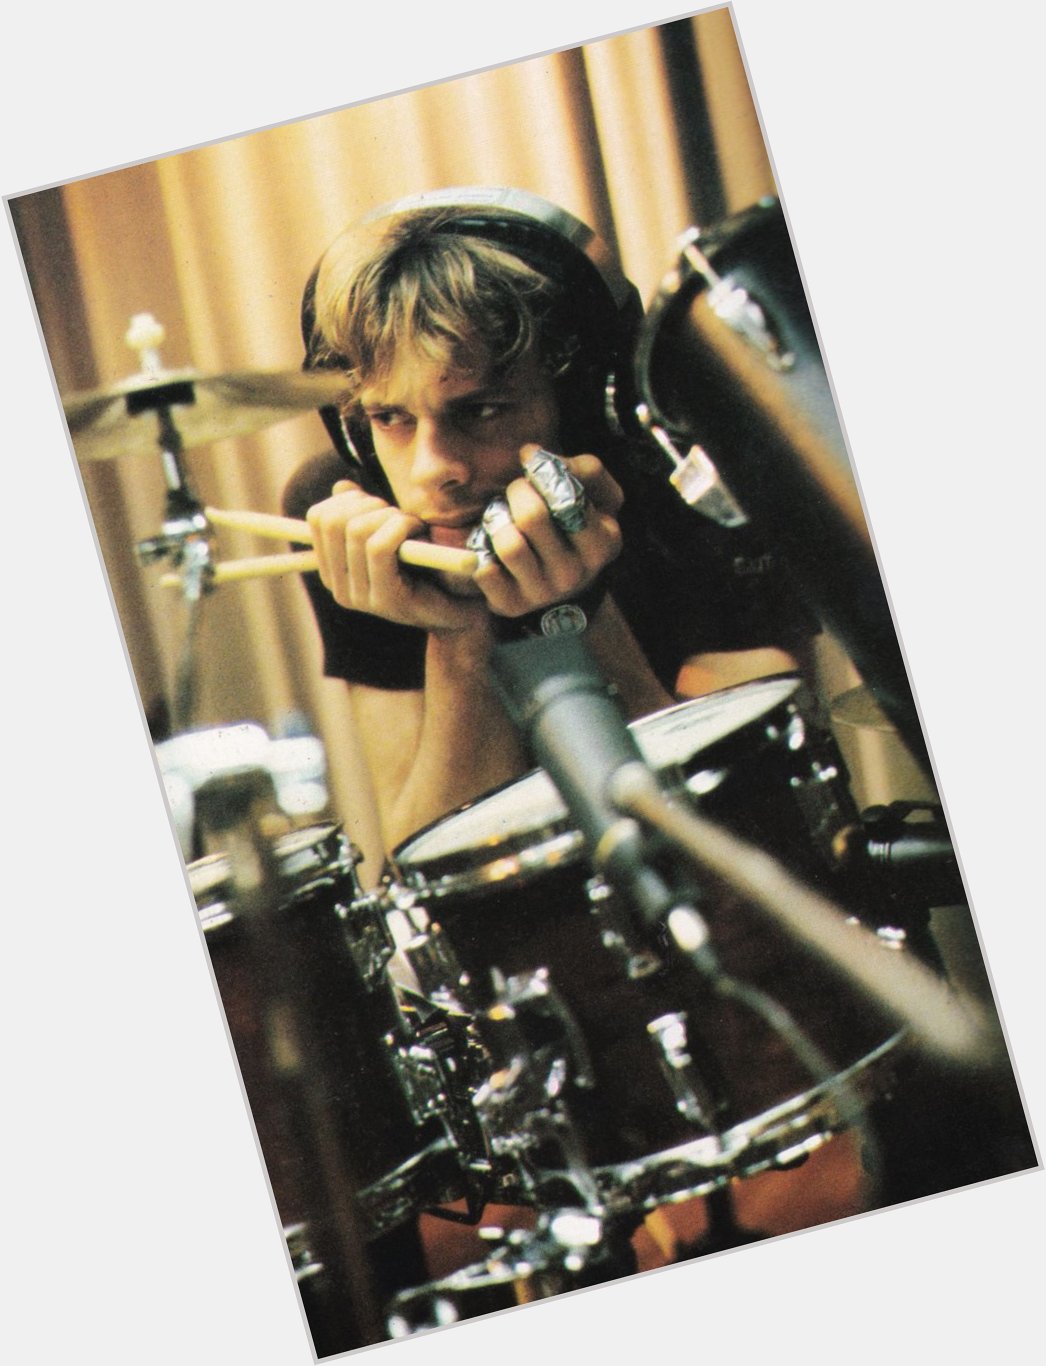 Happy Birthday to loudest drummer, Stewart Copeland. 